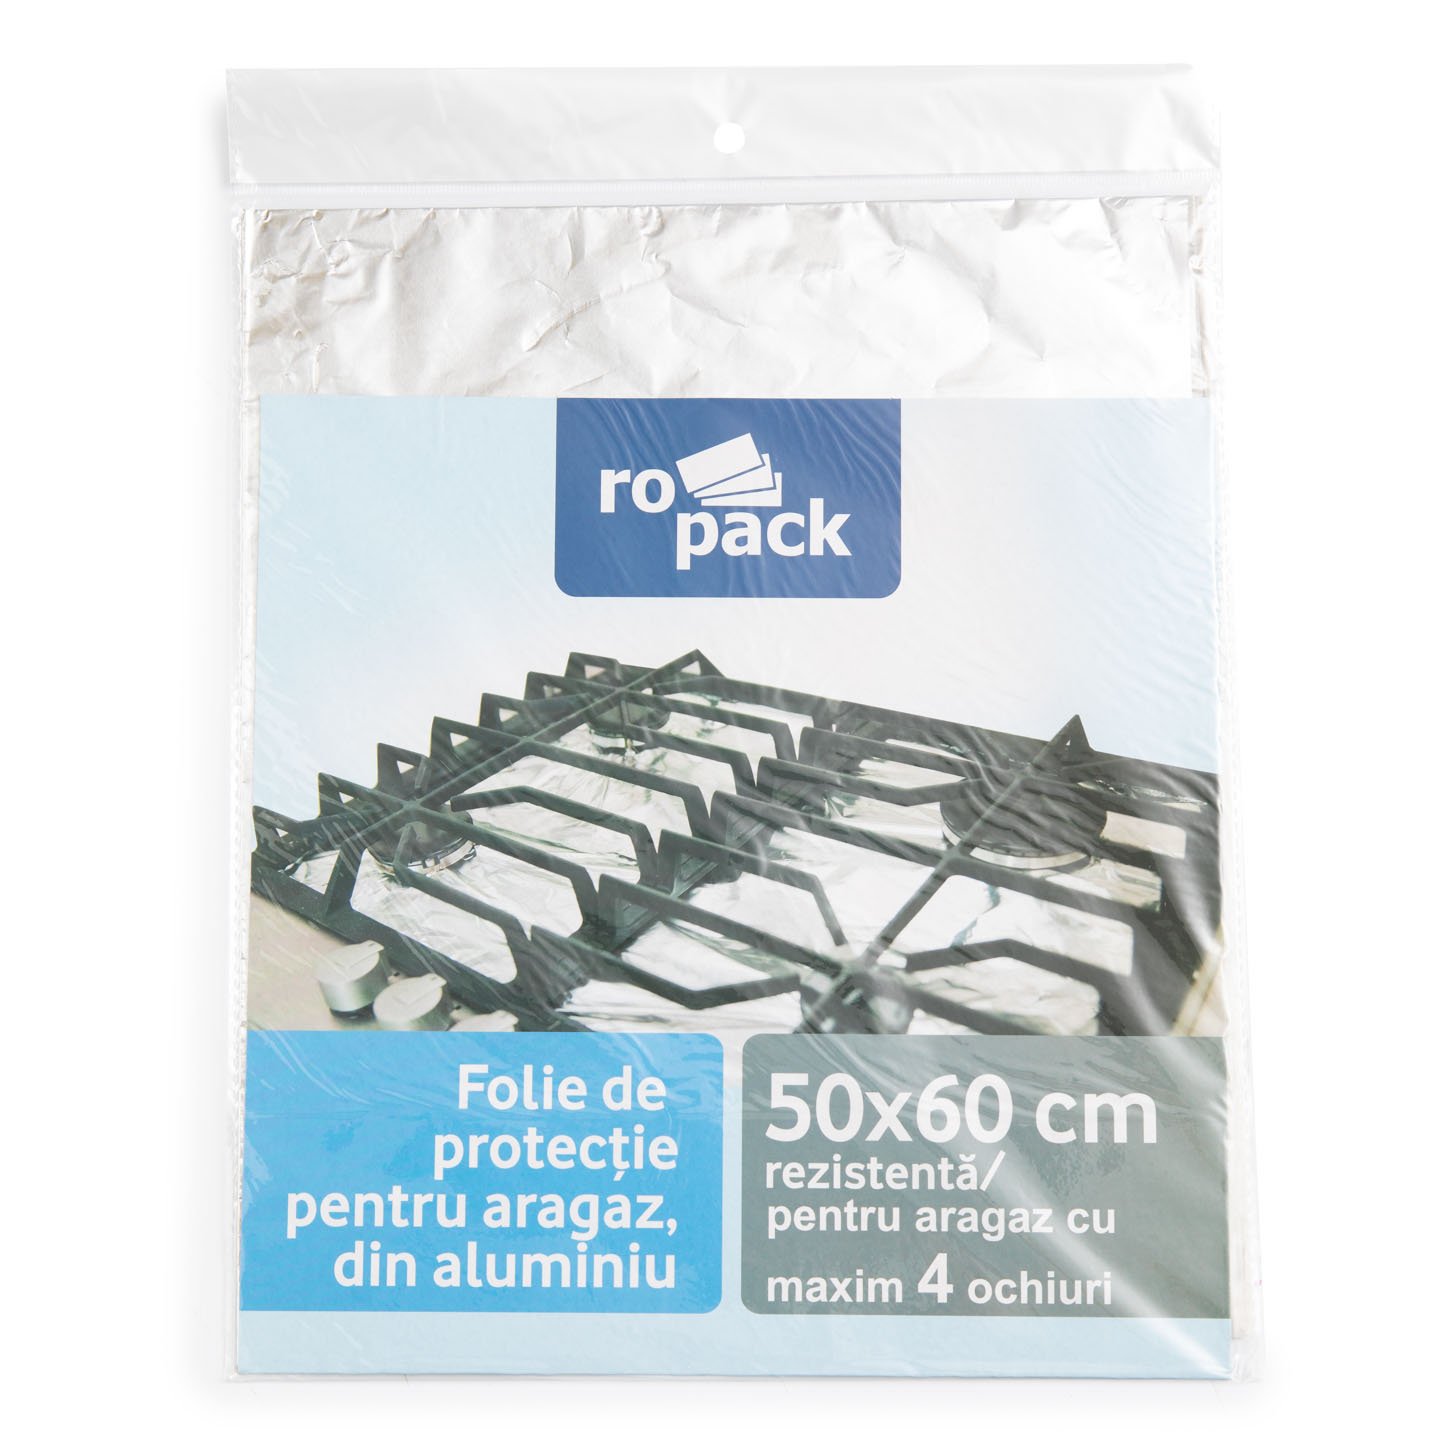 Folie de protecție pentru aragaz, din aluminiu Ro Pack 50cm x 60cm